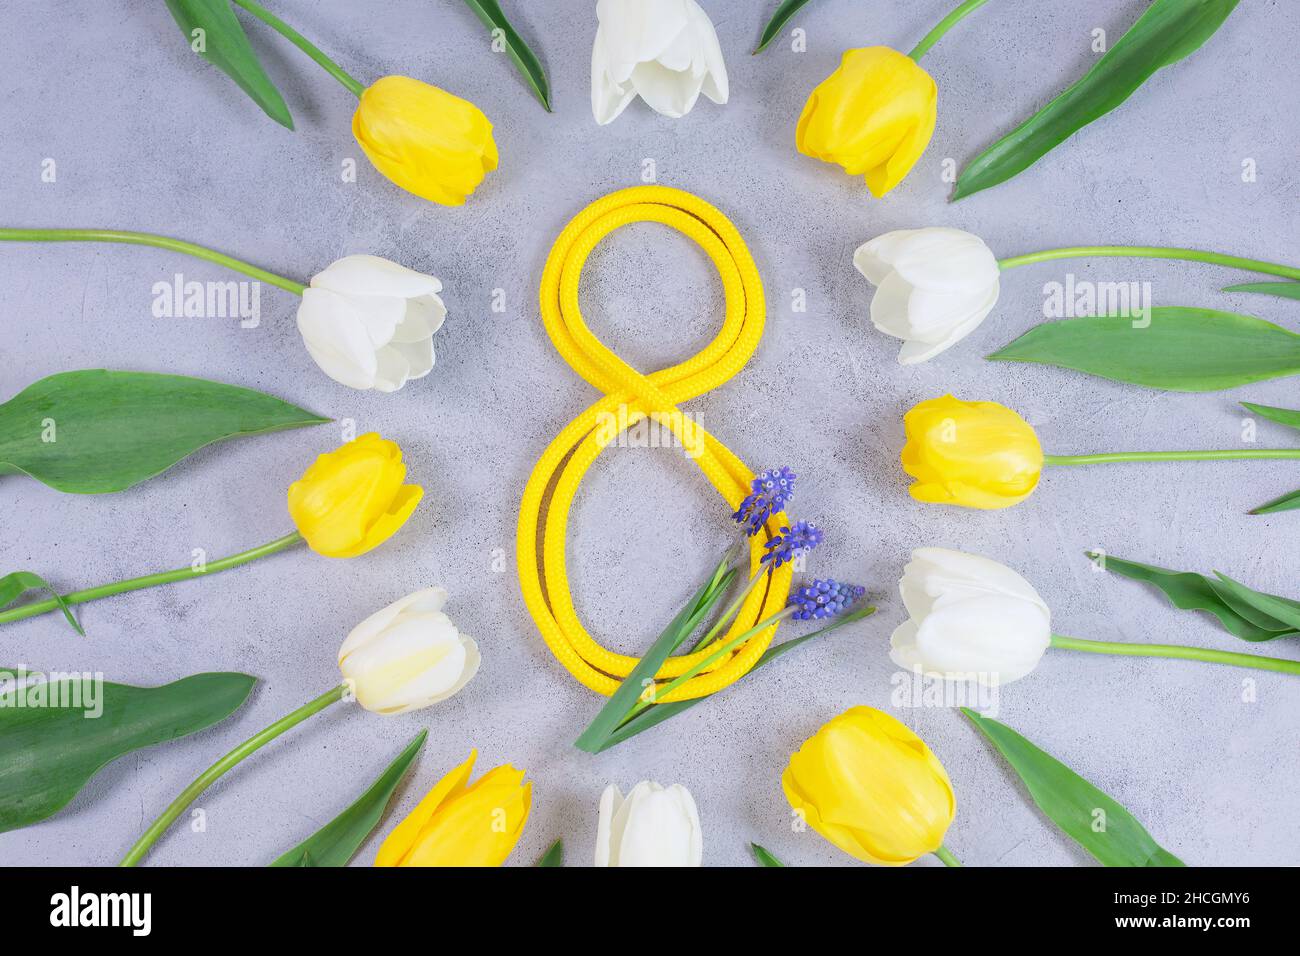 Tulipes blanches et jaunes et ruban jaune en forme de numéro 8.Composition de mars 8.Flat lay, vue de dessus. Banque D'Images